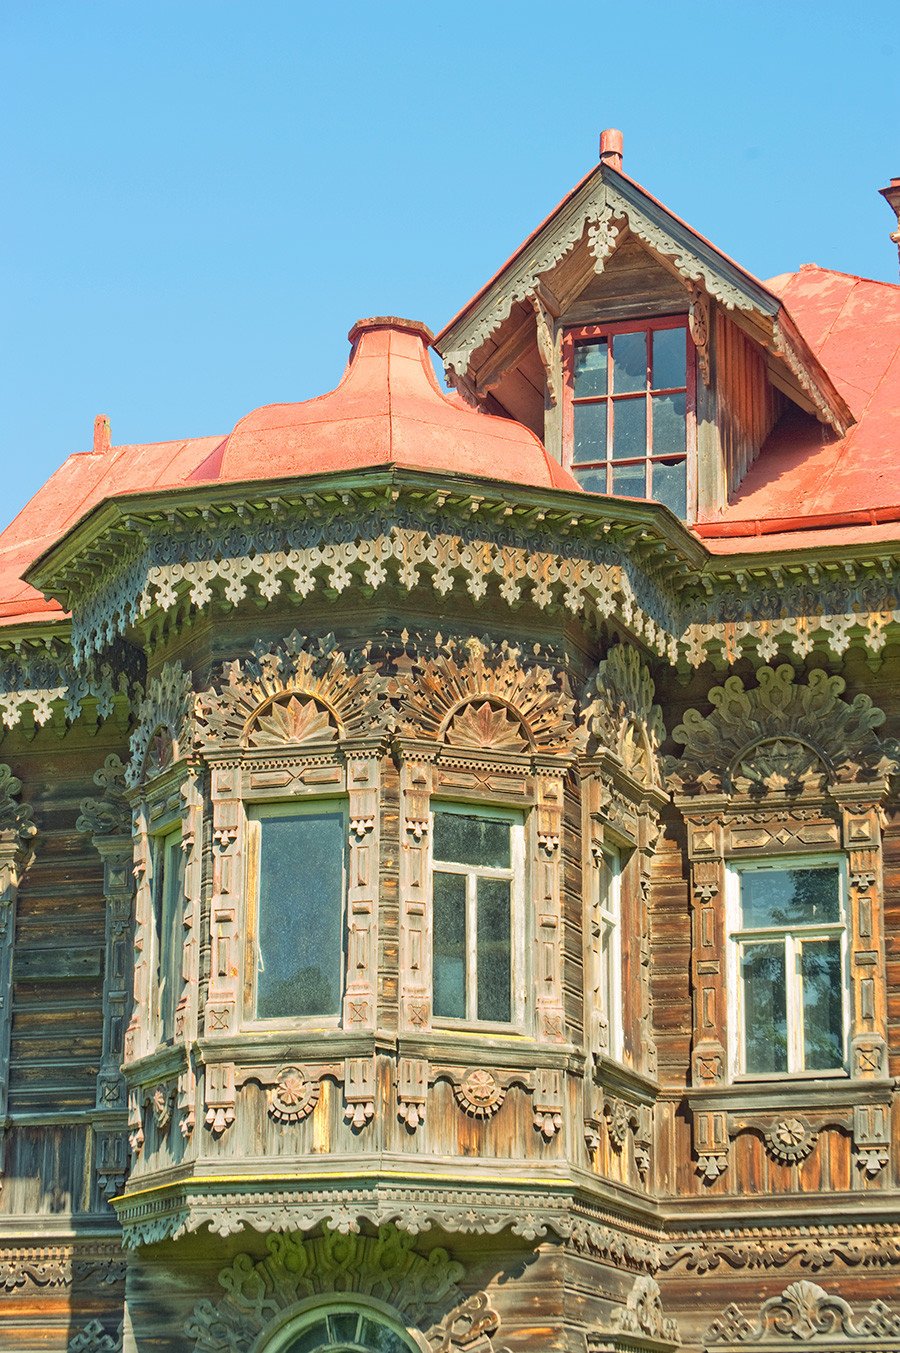 Rumah Poliashov. Fasad barat, teluk rumah dengan jendela dekoratif. 29 Mei 2016.